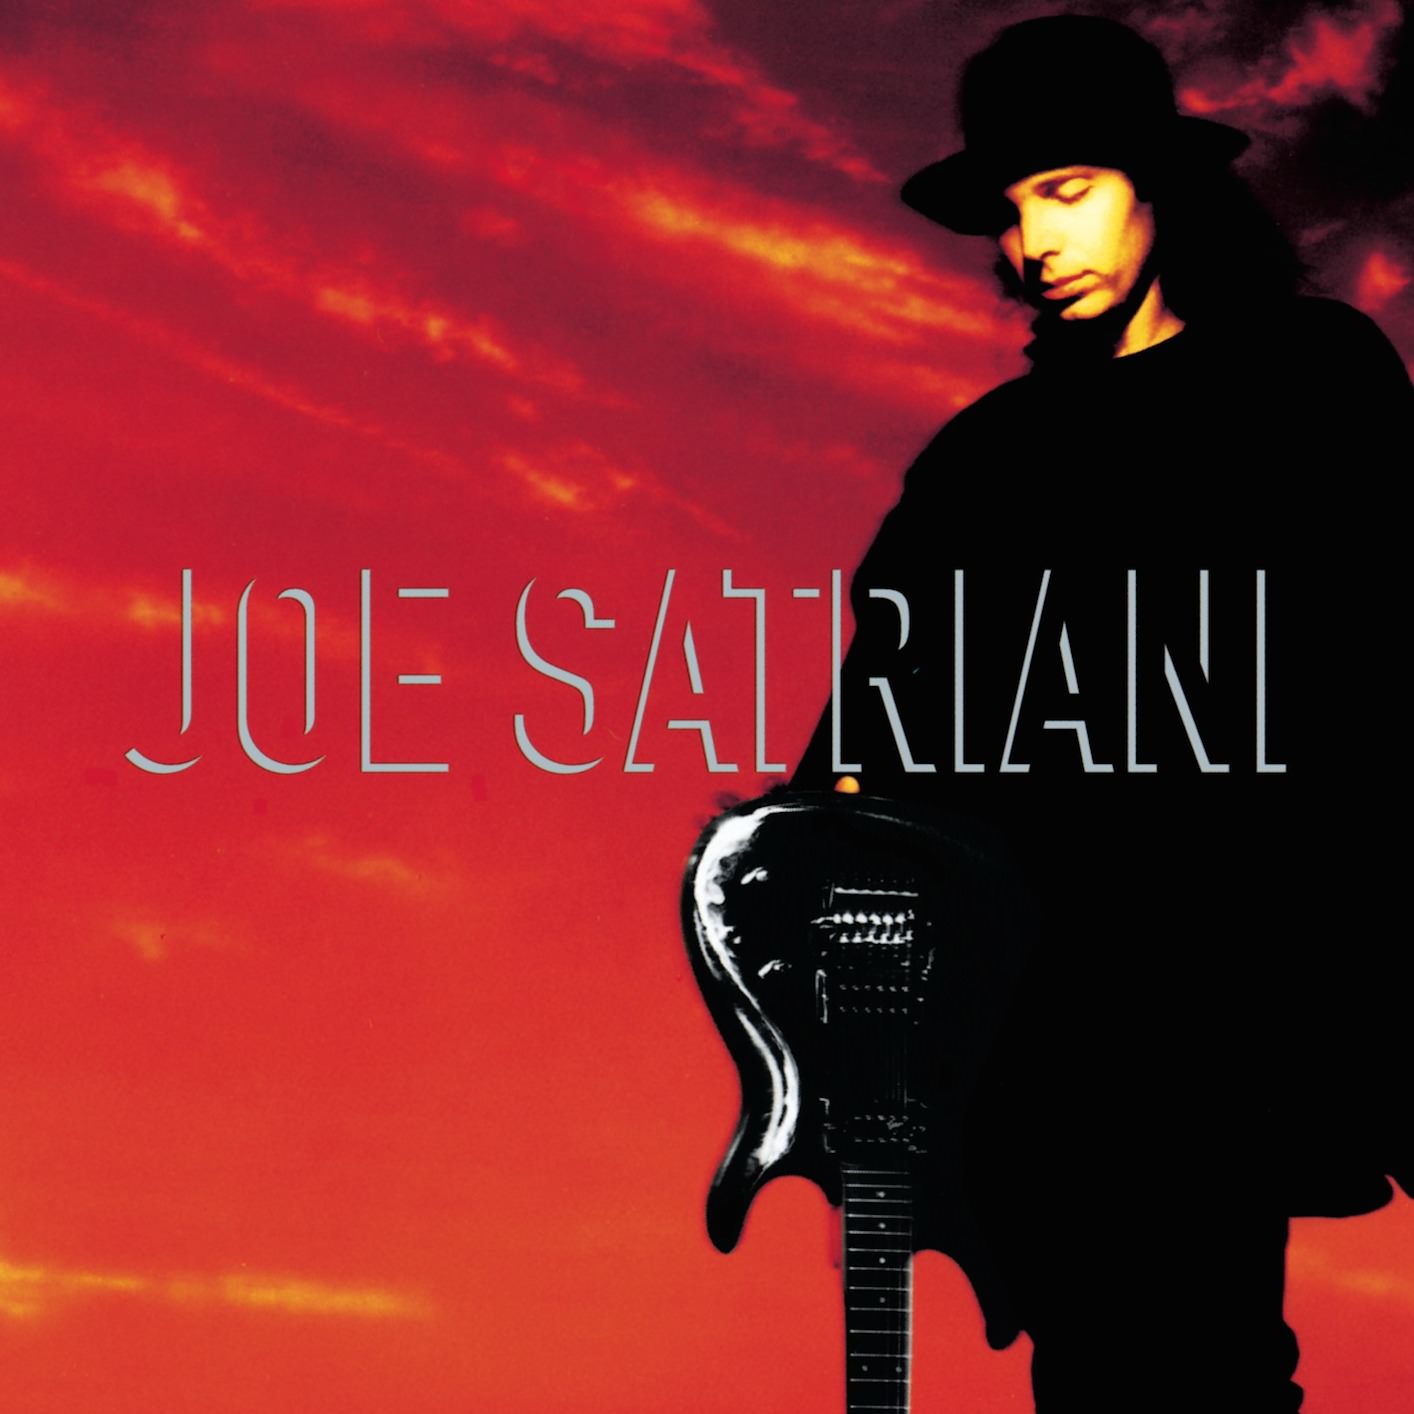 Joe Satriani – Joe Satriani (1995/2014) [Official Digital Download 24bit/96kHz]